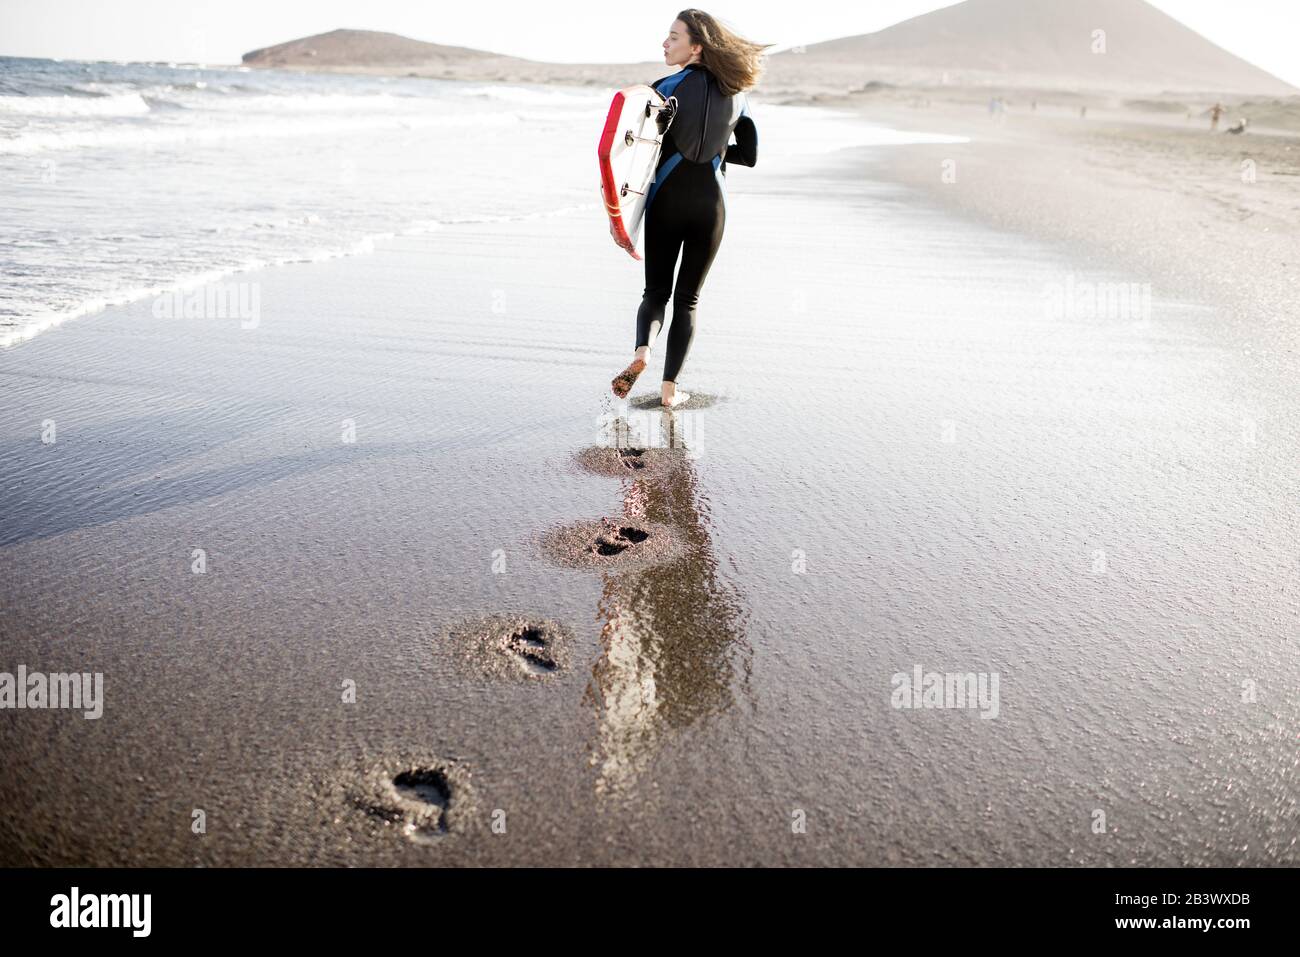 Junge Frau im Wetsuit, die mit Surfbrett spazieren geht, hinterlässt Fußabdrücke auf dem Sand, Blick von der Rückseite. Wassersport und aktives Lifestyle-Konzept Stockfoto